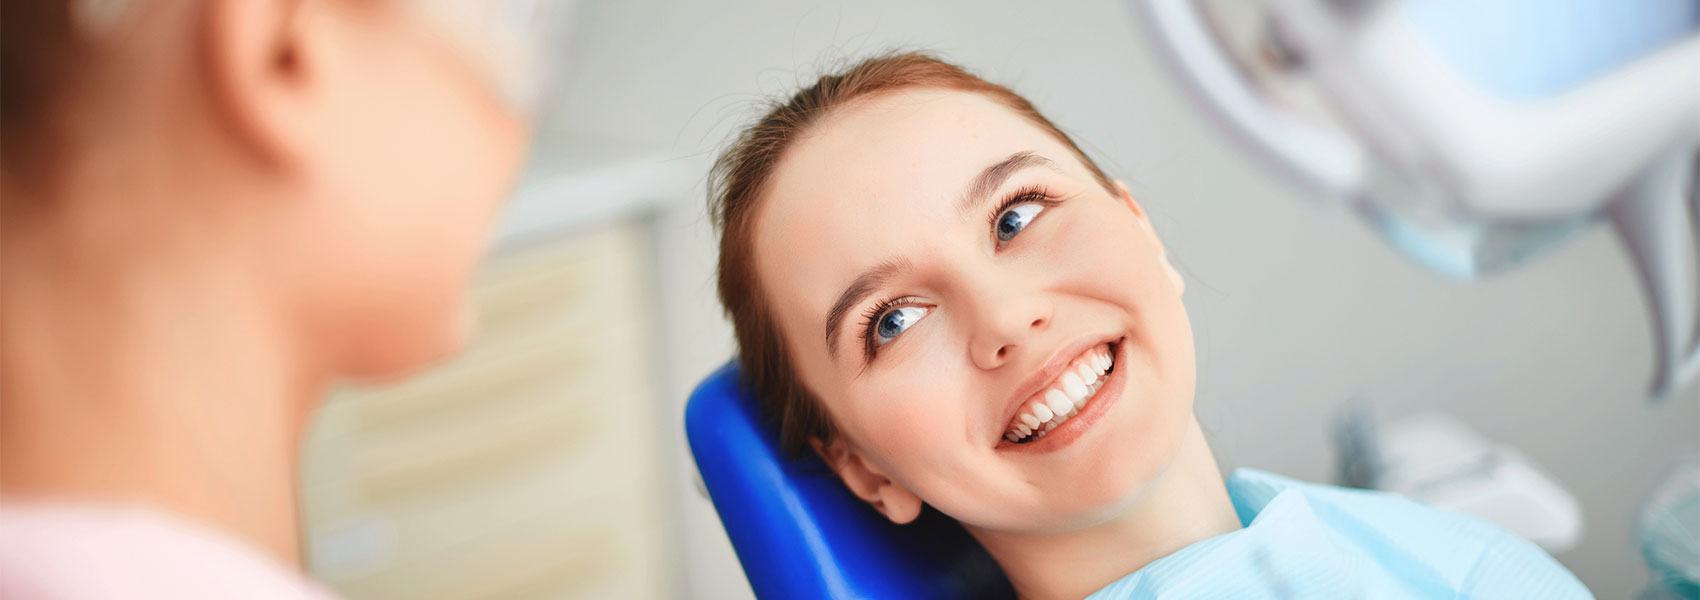 Beautiful woman smiling in dental